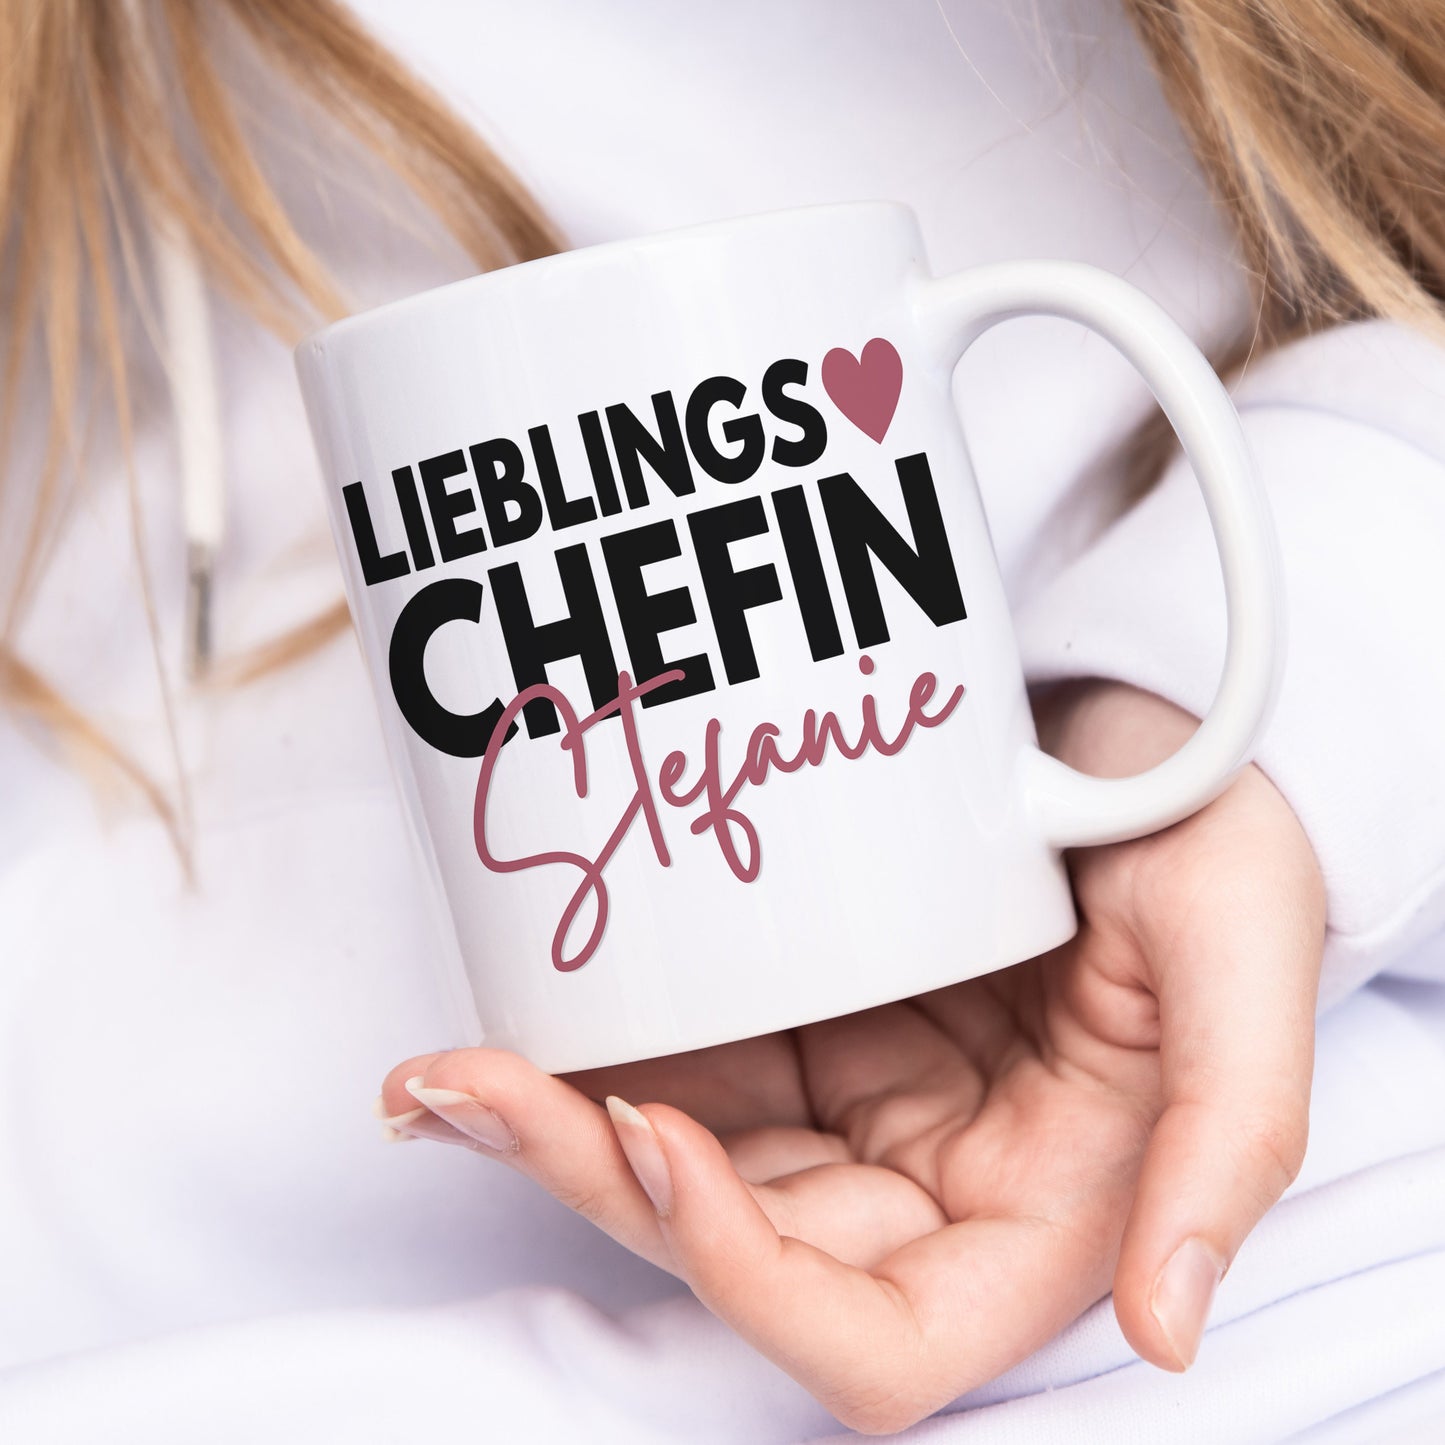 Chefin Geschenk Tasse Personalisiert für Chefin Abteilungsleiter Abschiedsgeschenk Büro Kaffeebecher Lieblingskollegin